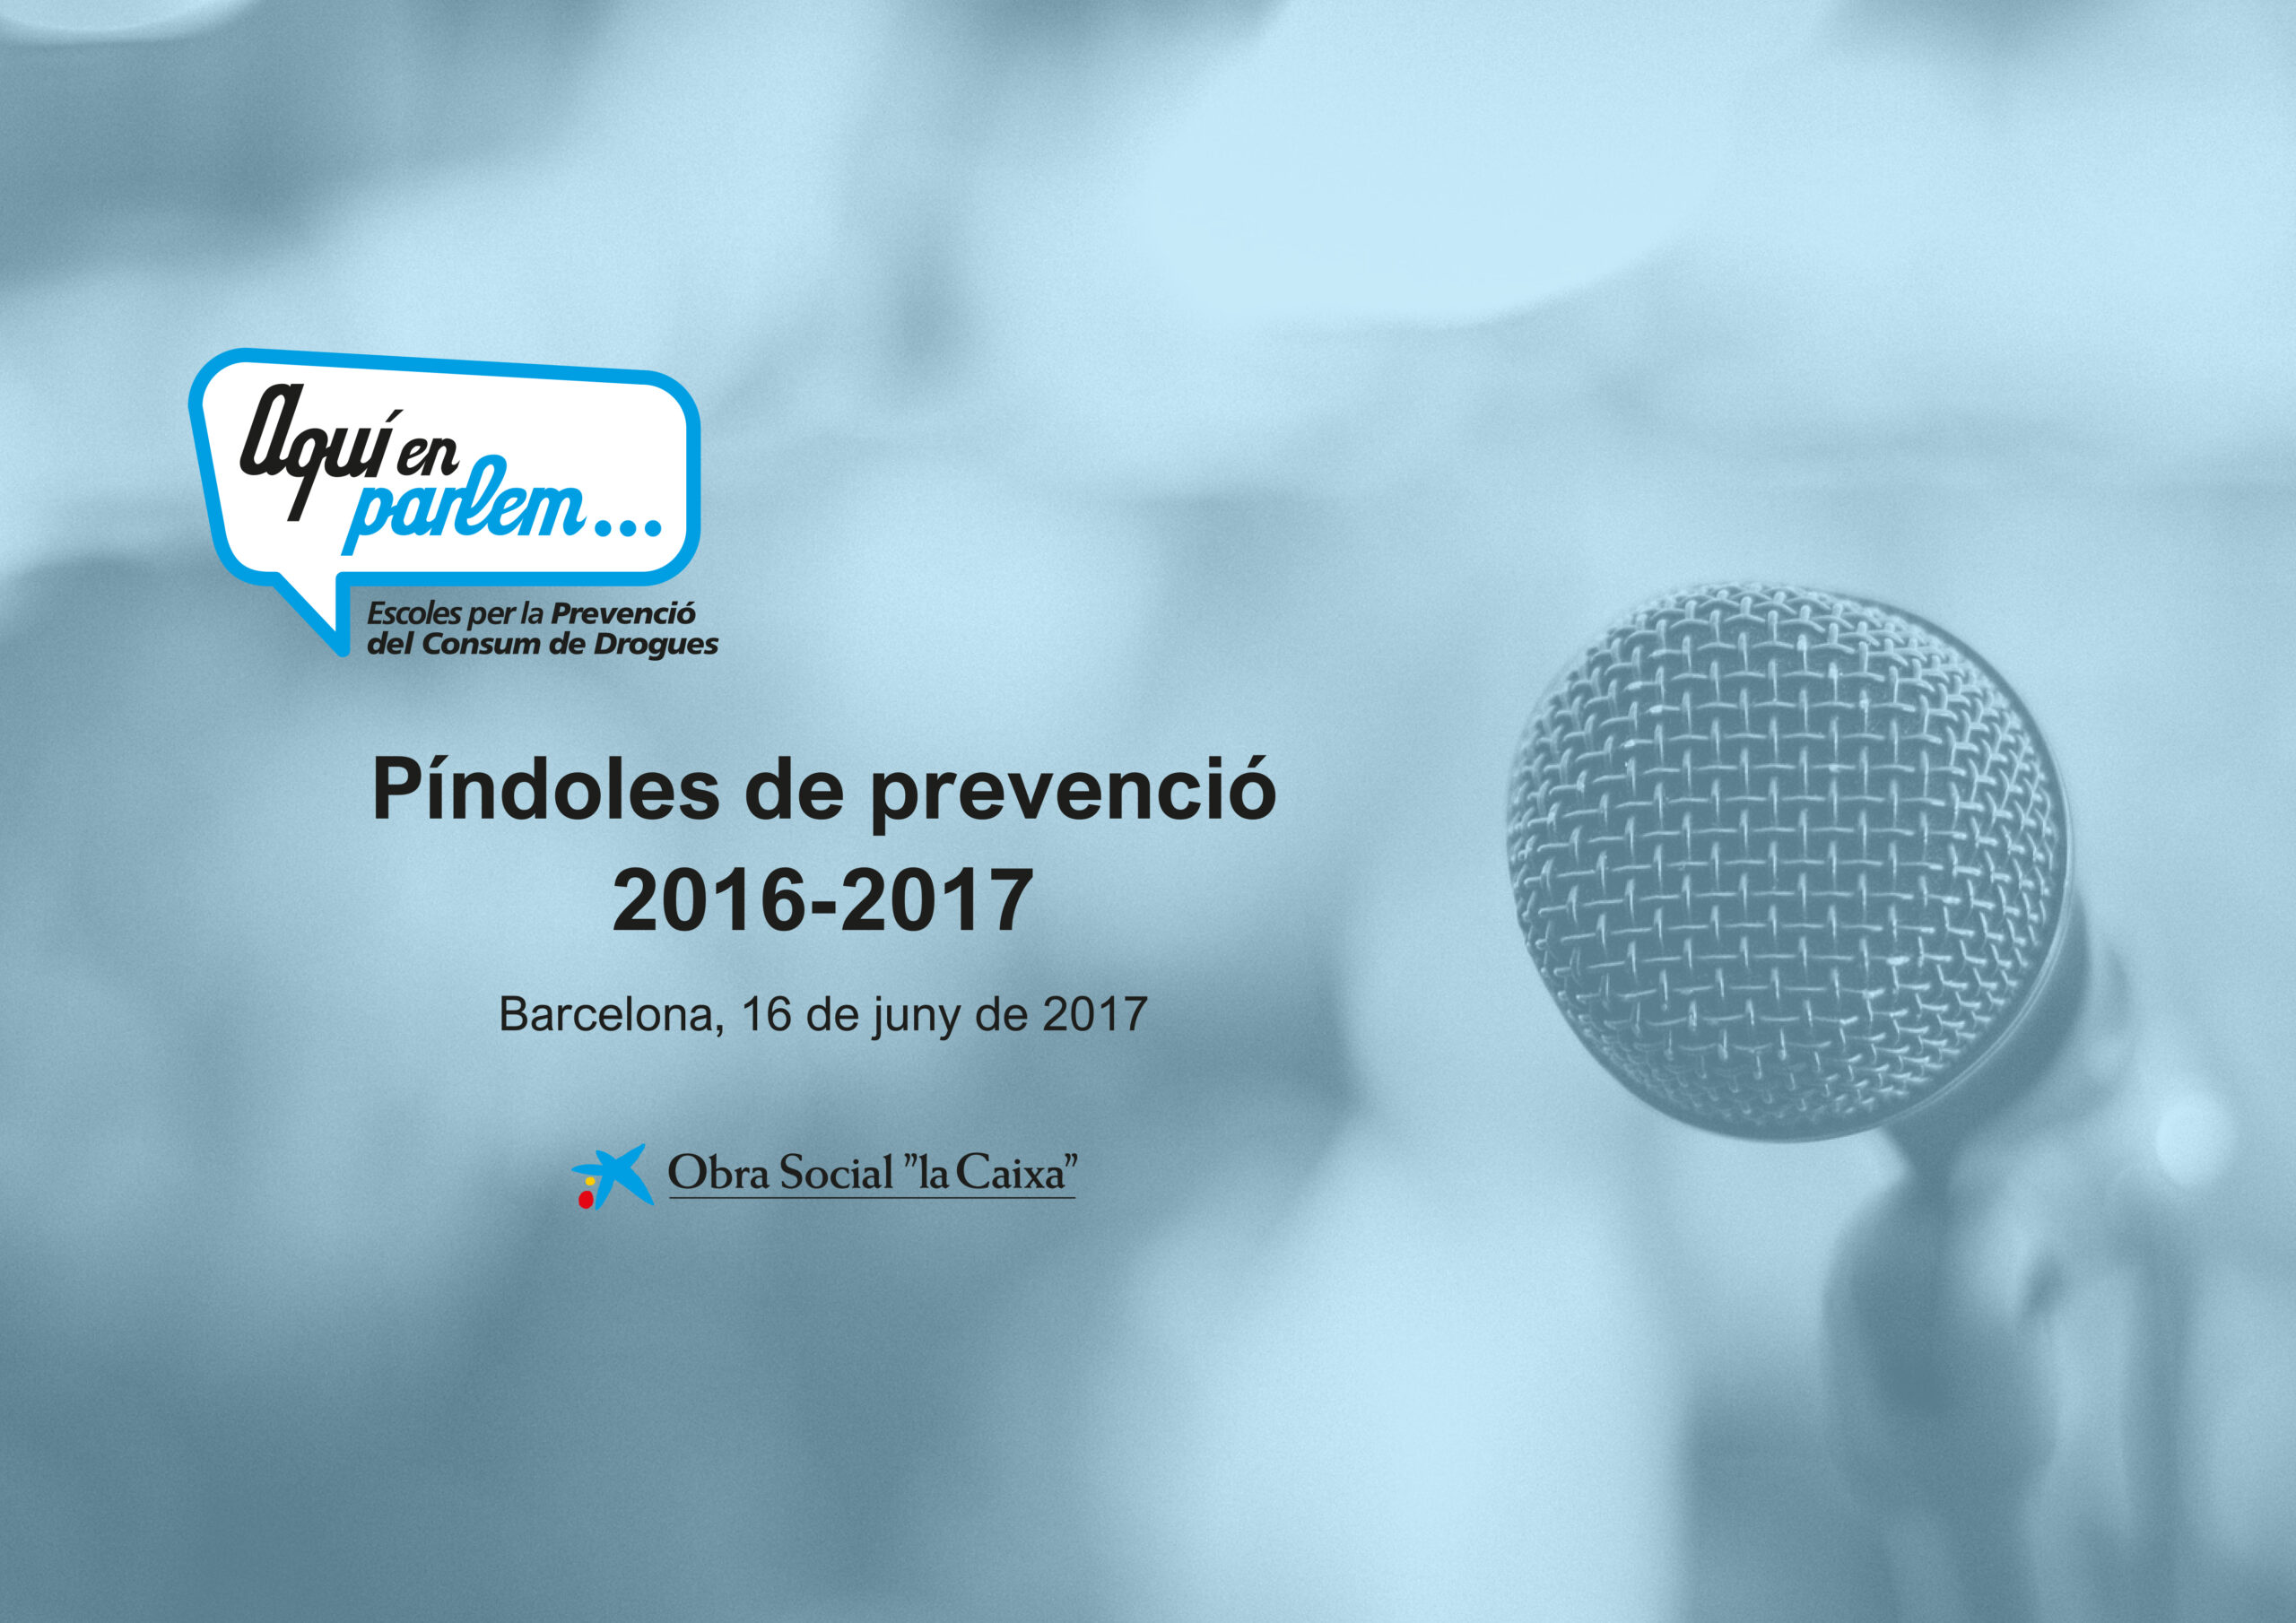 You are currently viewing Jornada del Píndoles de prevenció 2017 del projecte AQUÍ EN PARLEM.